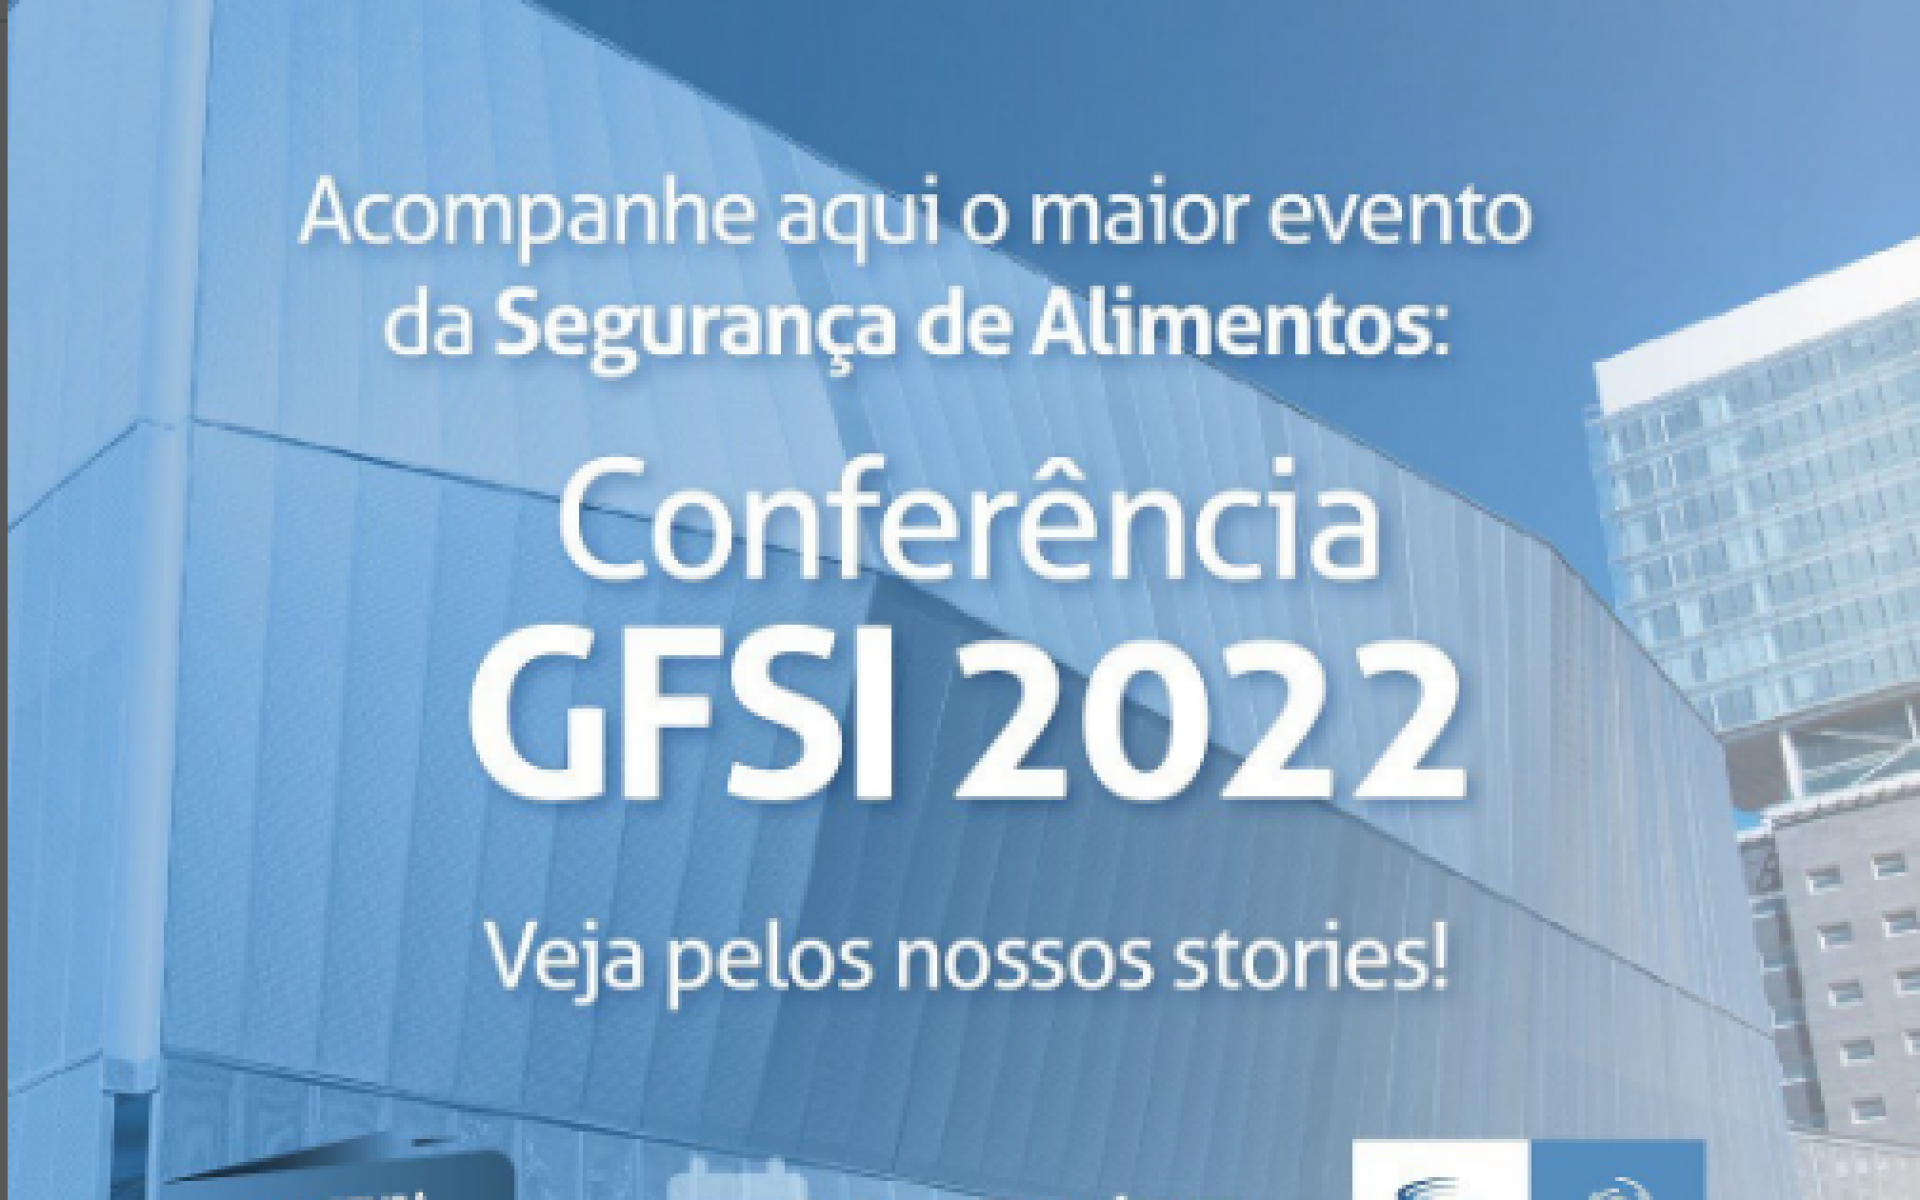 O GFSI começou e a nossa cobertura do evento, em parceria com o IRFSD @irsfd_ , também!